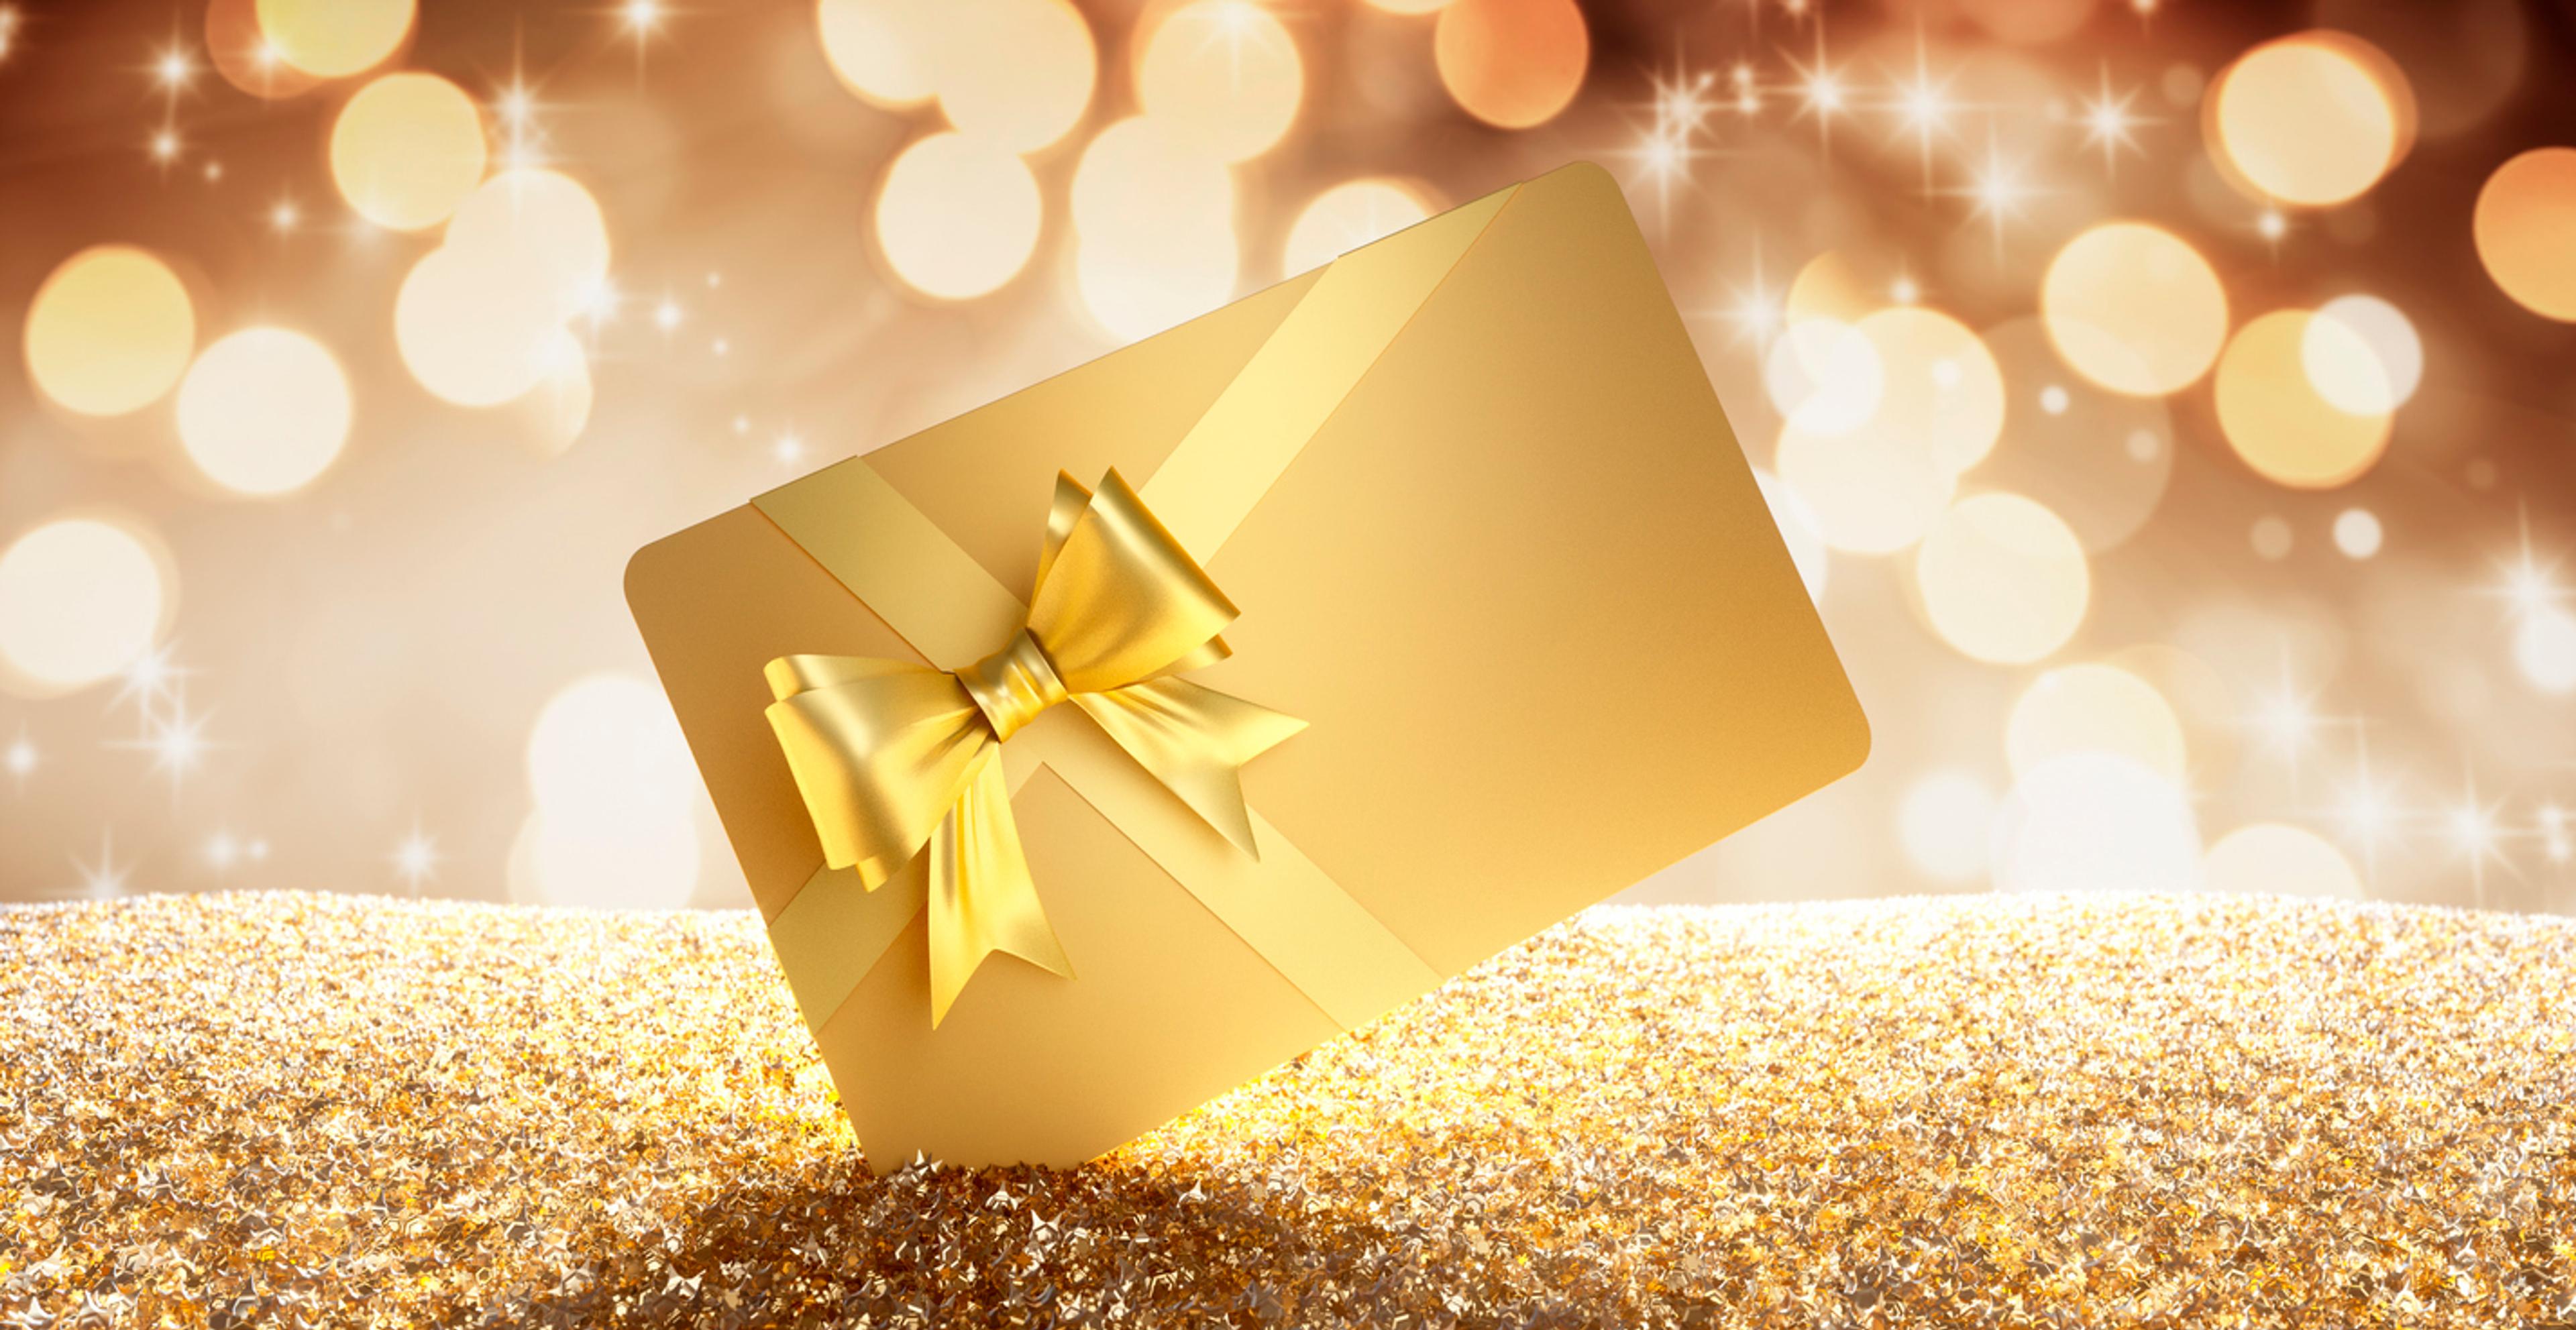 bilde av et gavekort i gull med gullsløyfe med gylne lys i bakgrunnen